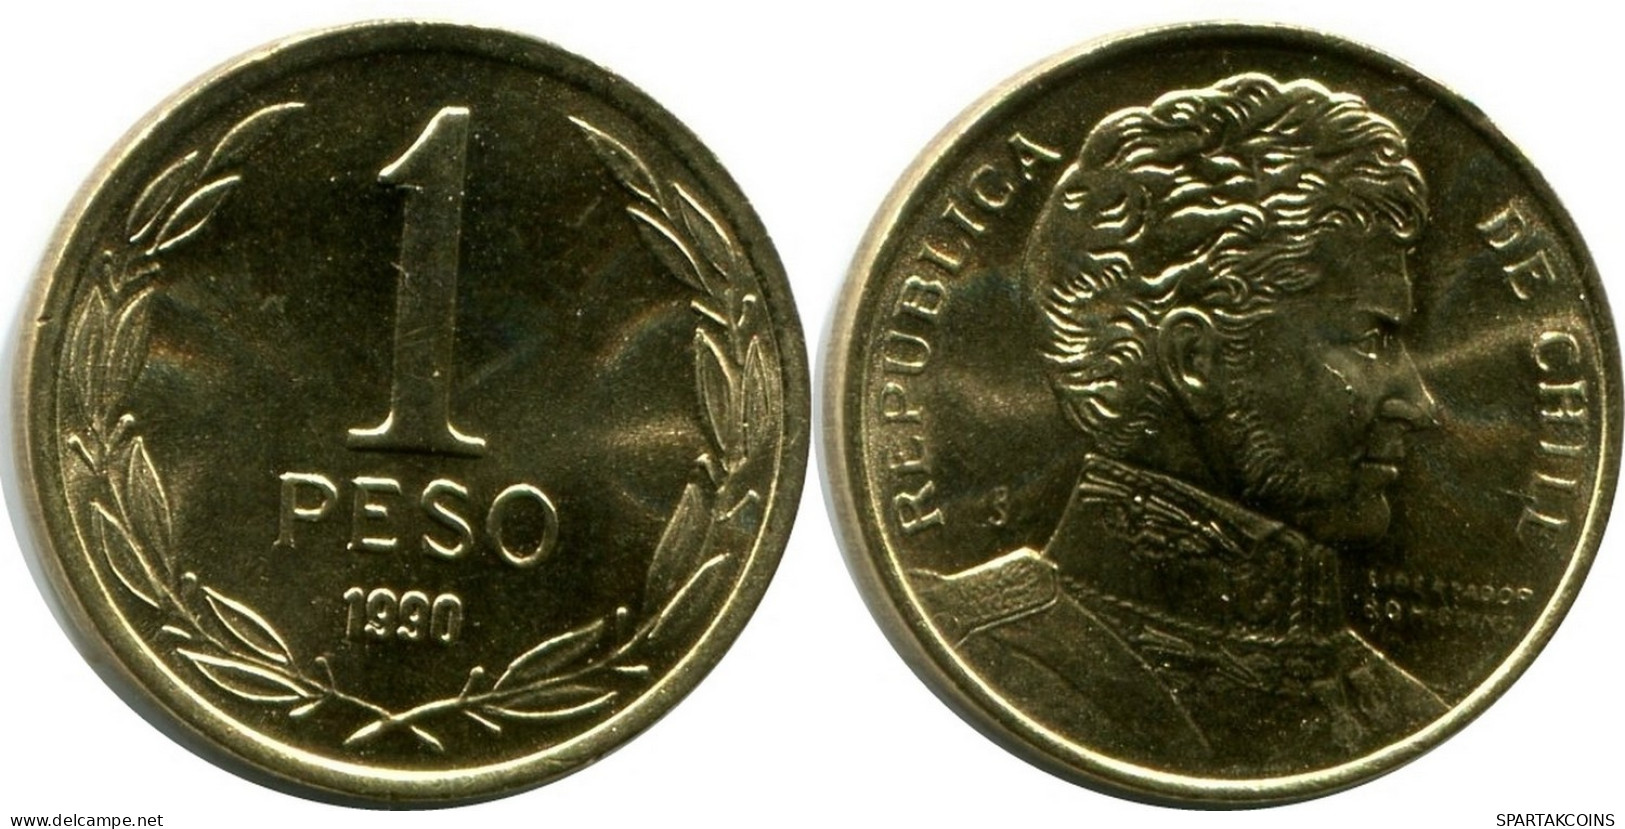 1 PESO 1990 CHILE UNC Münze #M10136.D.A - Chili